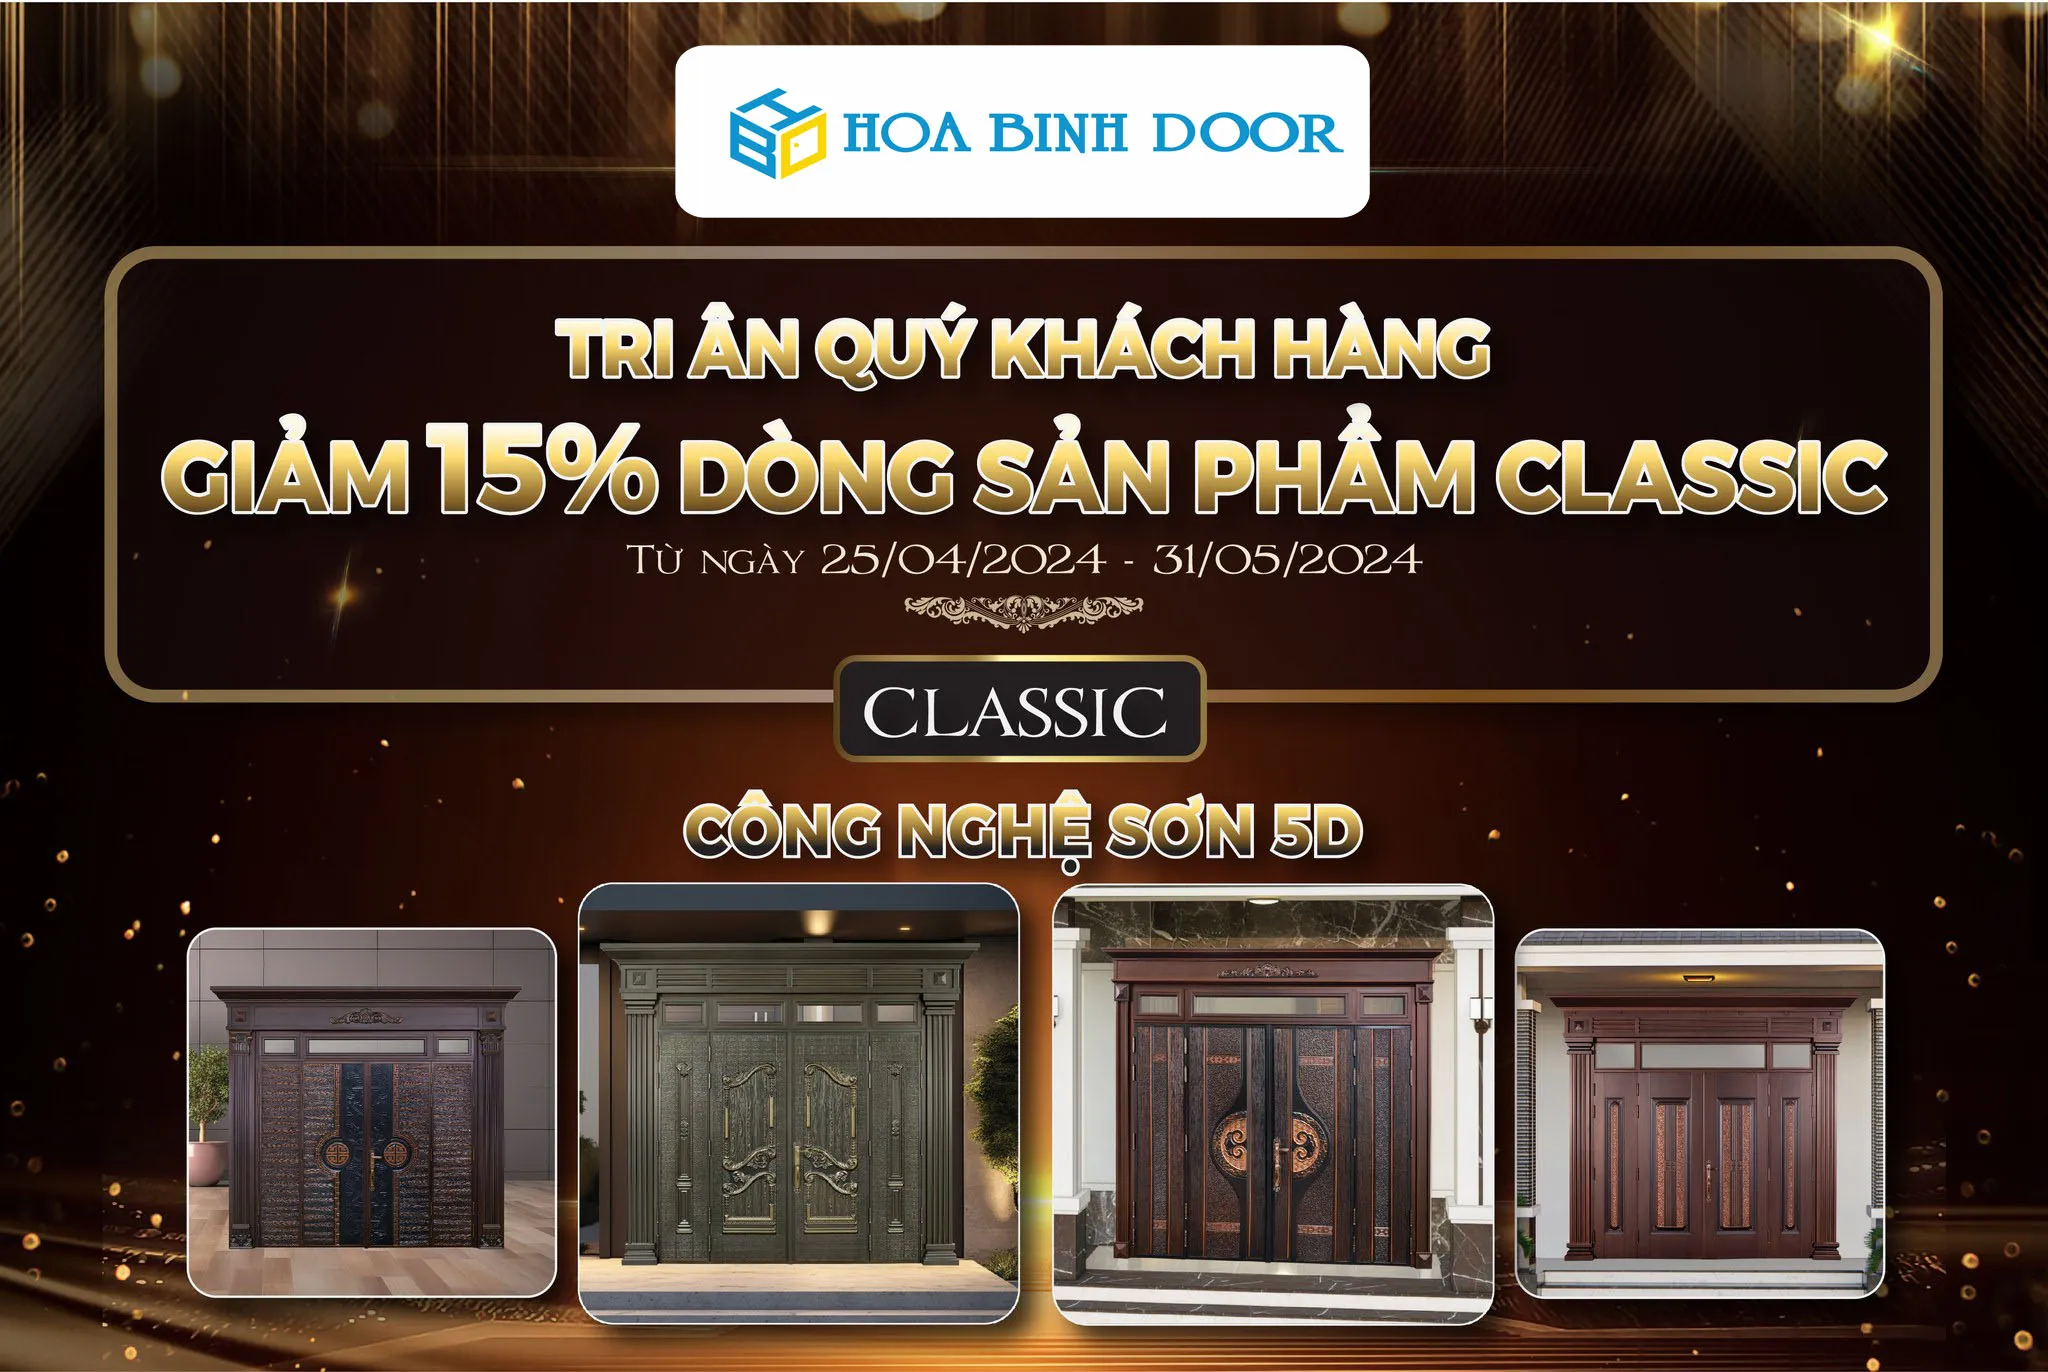 Hoa Binh Door